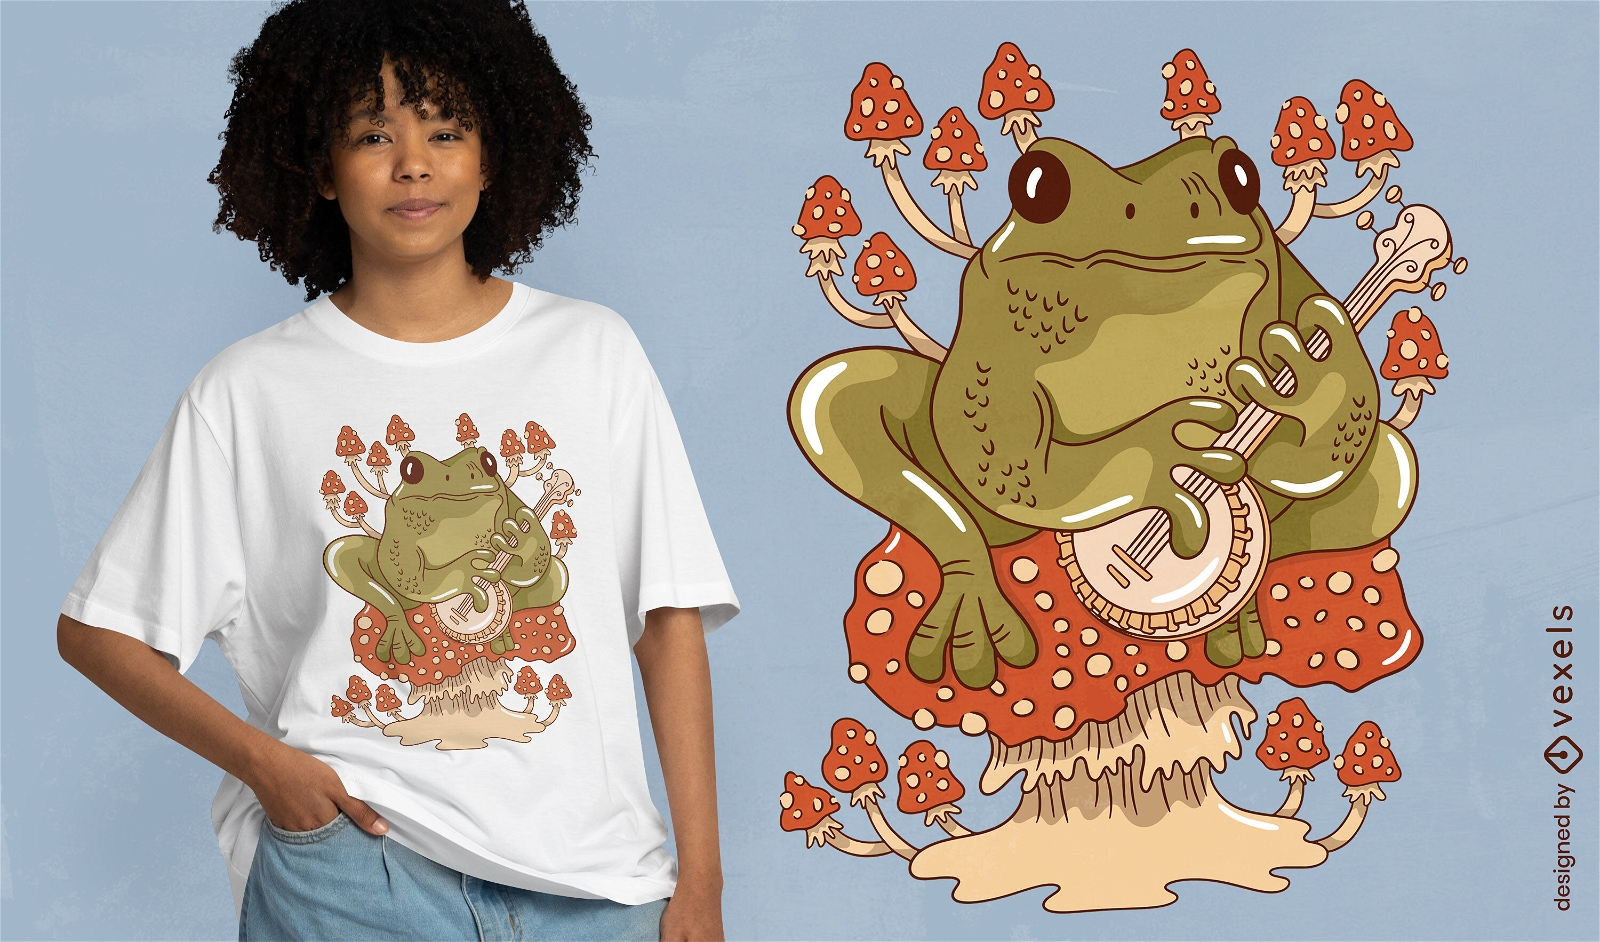 Frog animal playing banjo t-shirt design